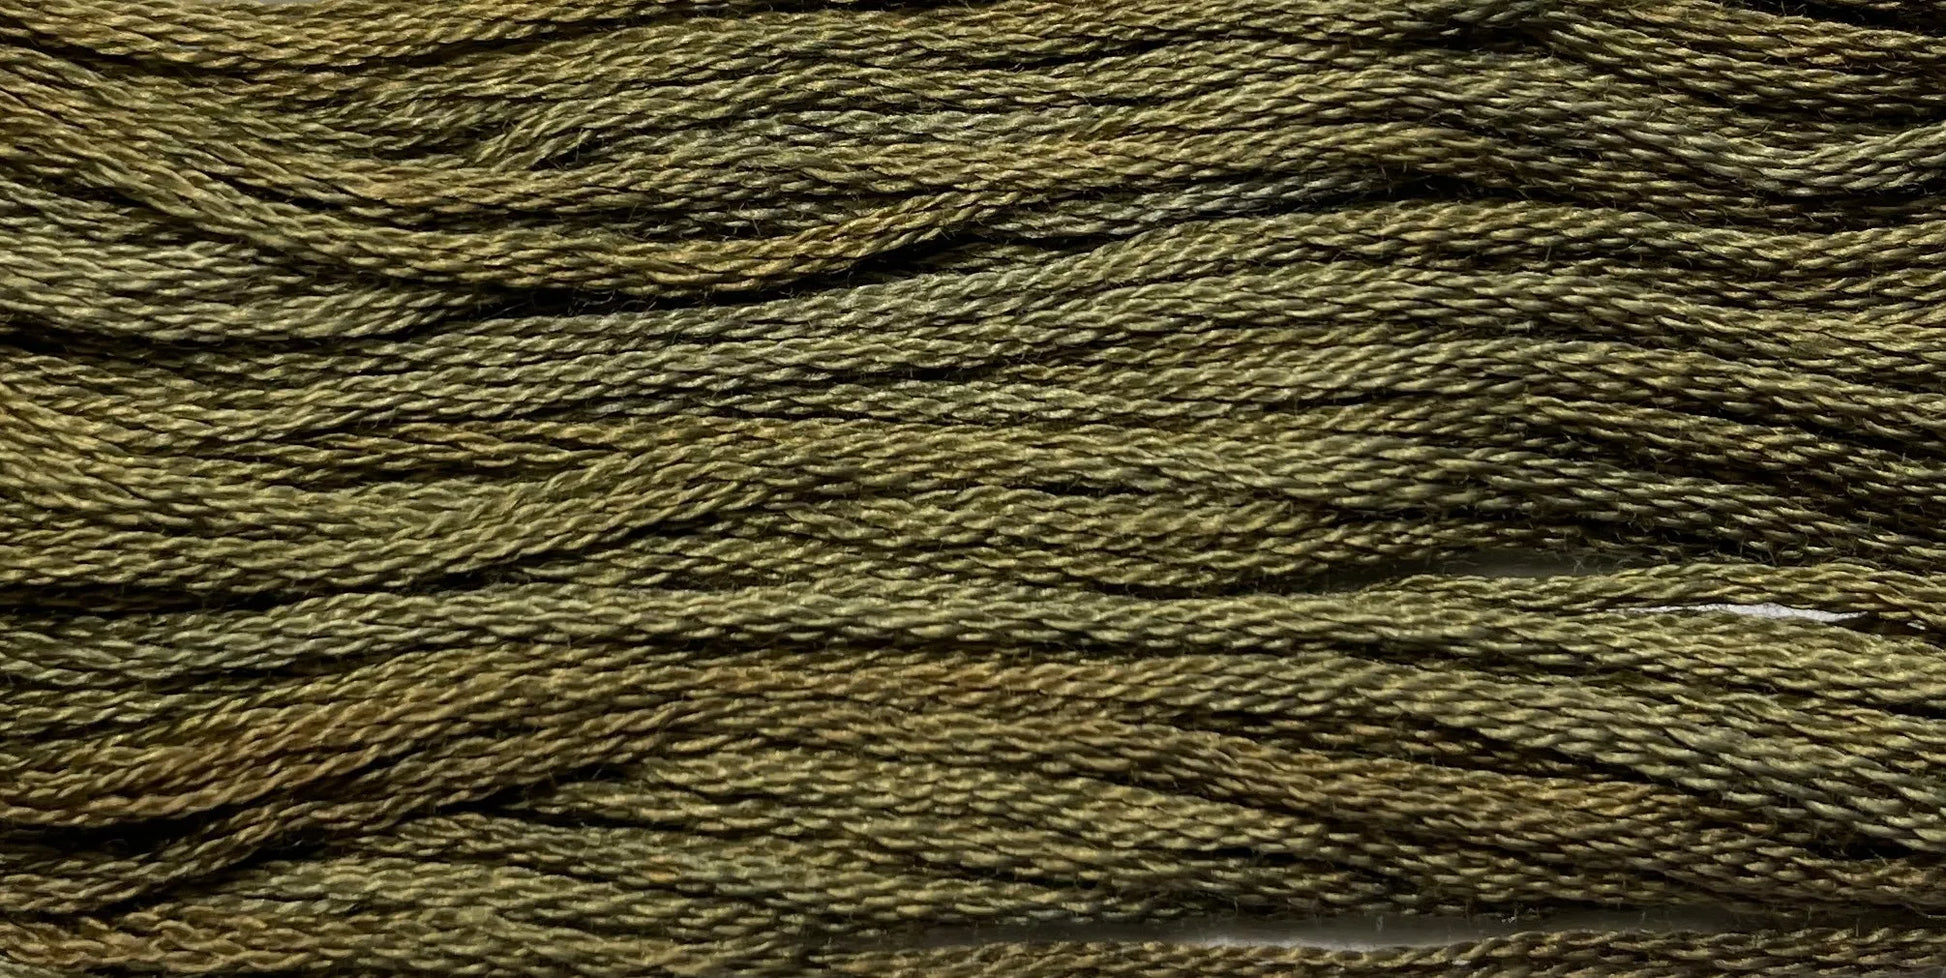 Wood Trail - Gentle Arts Cotton Thread - 5 yard Skein - Cross Stitch Floss